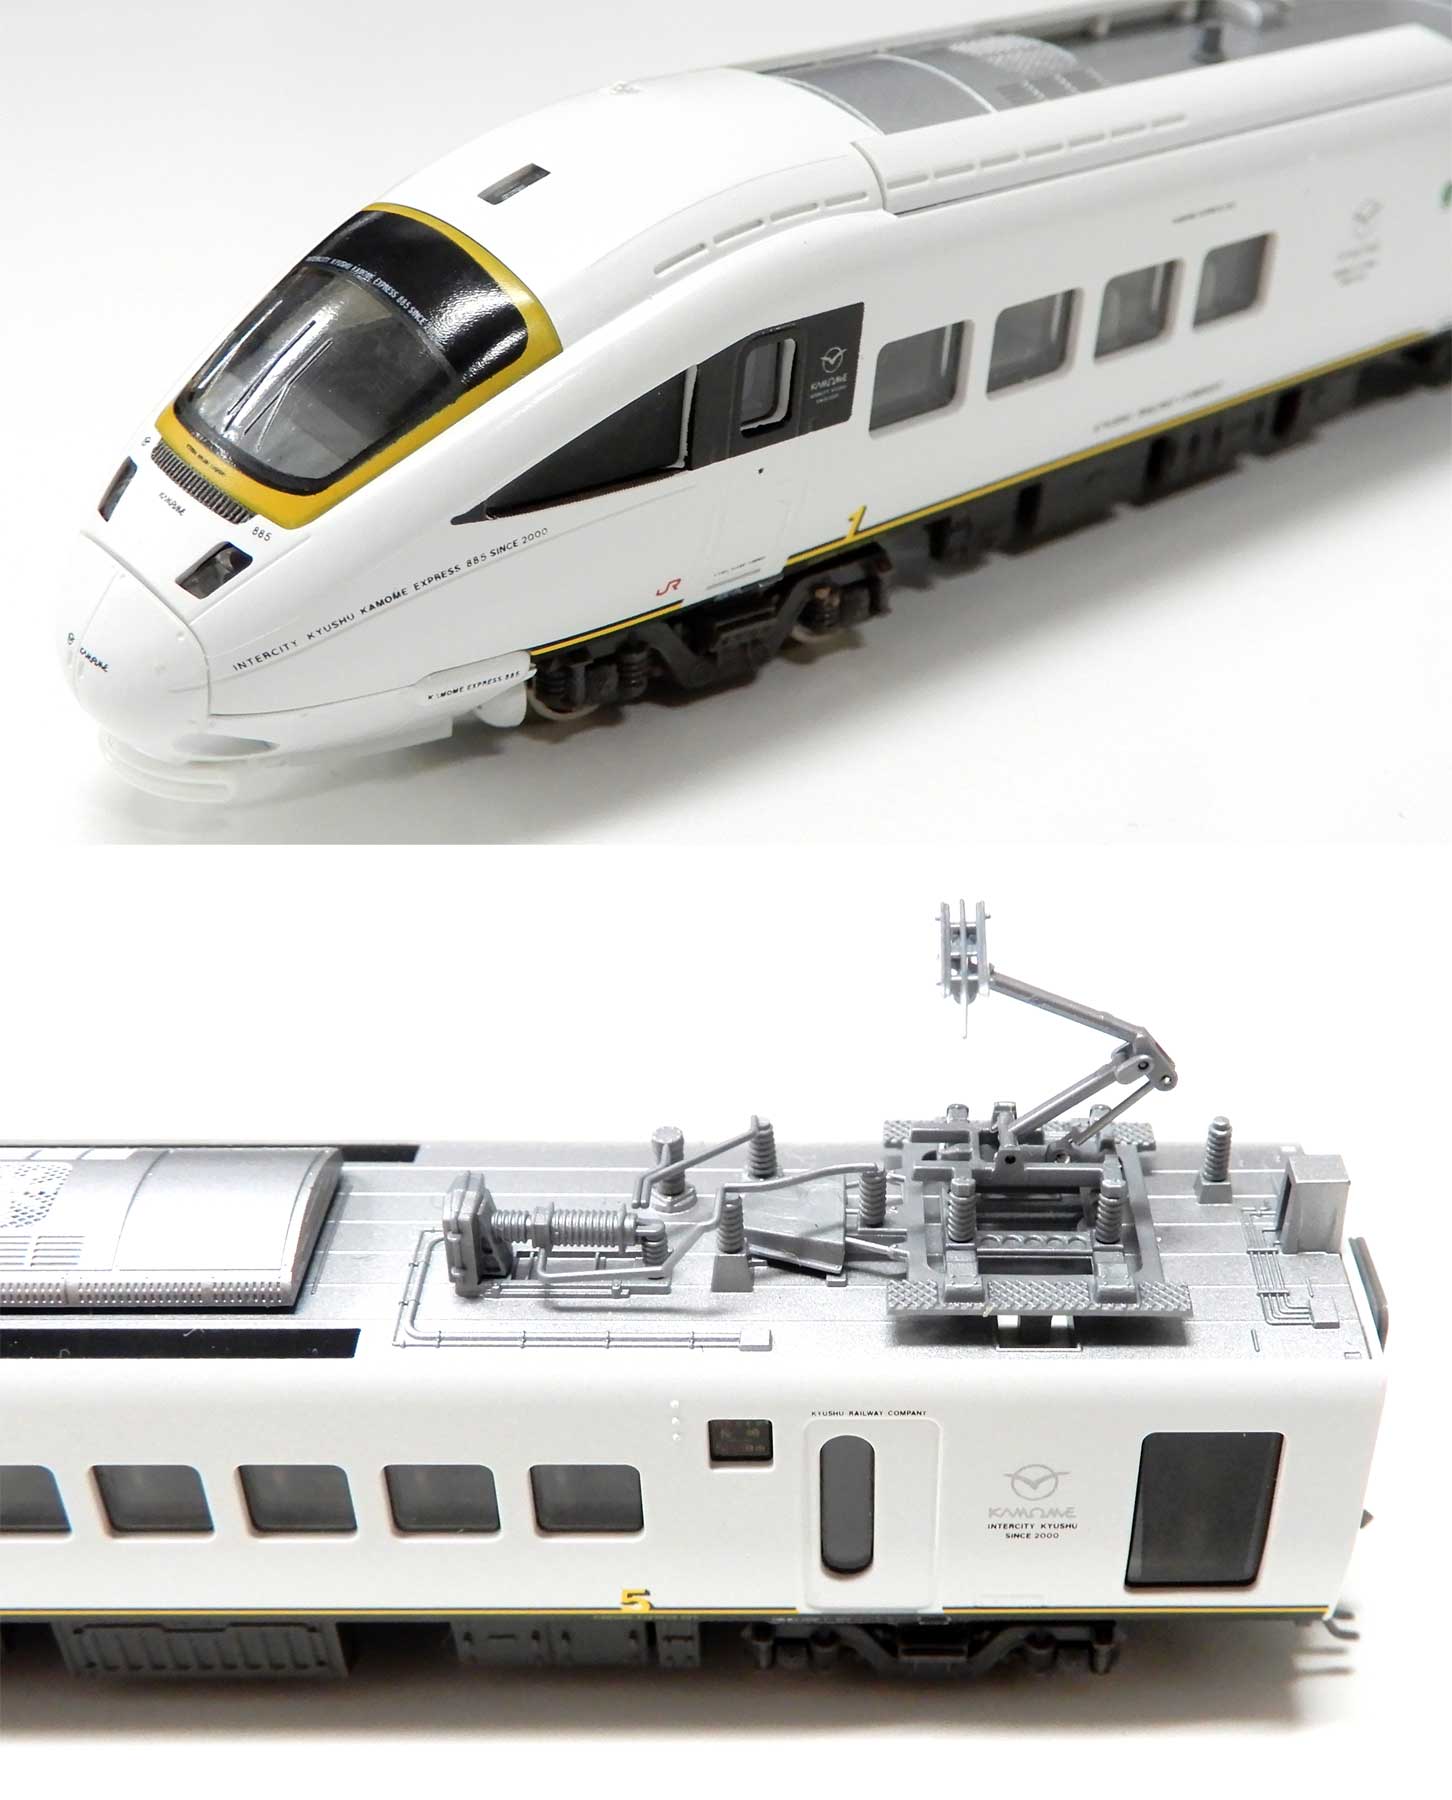 公式]鉄道模型(10-410885系 「白いかもめ」 6両セット)商品詳細｜KATO 